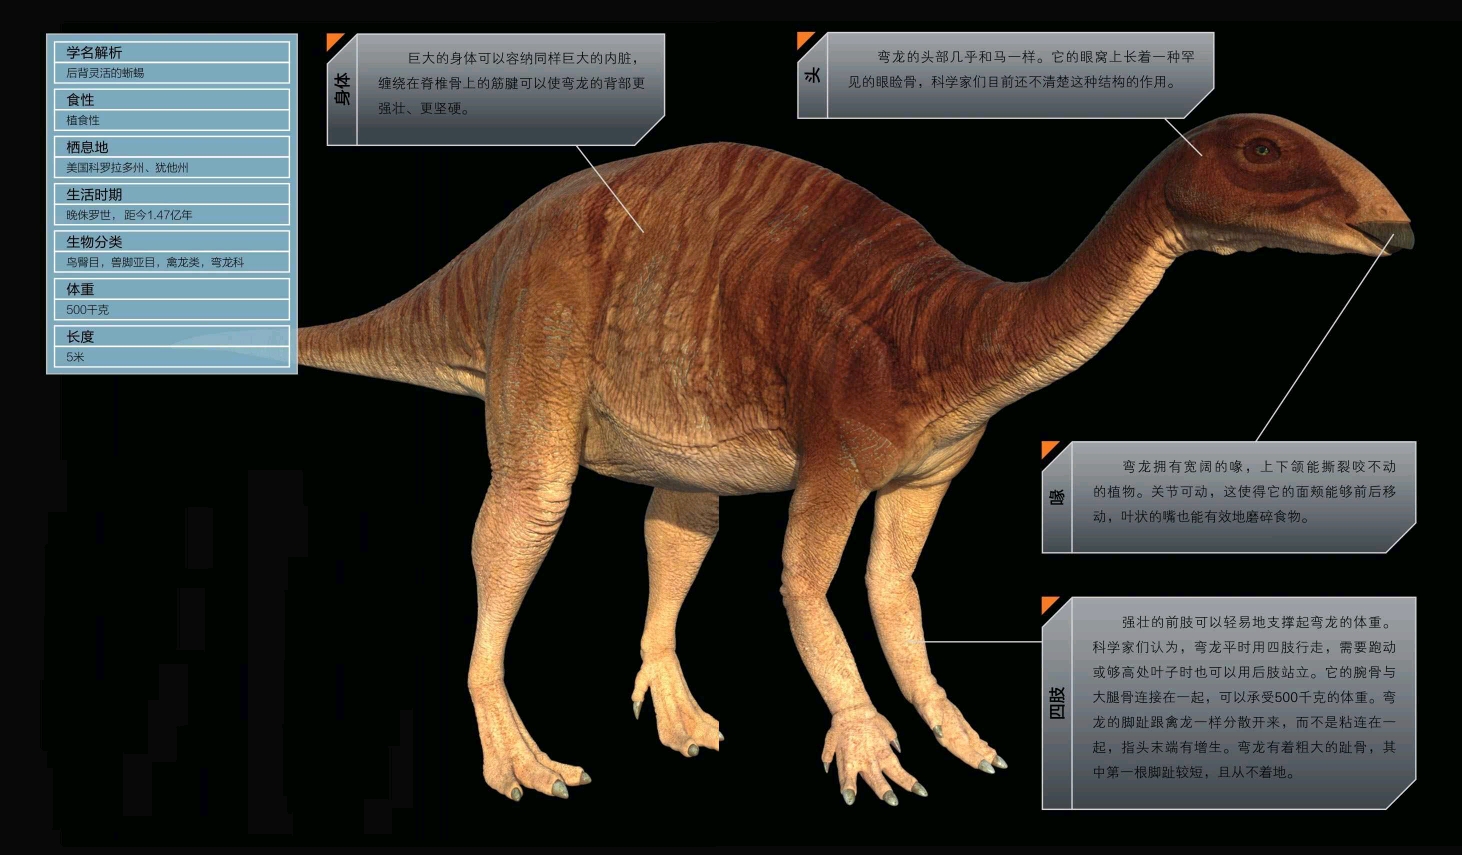 科技 自然 第4章,伟大的生存者 恐龙档案 弯龙(camptosaurus) 发音